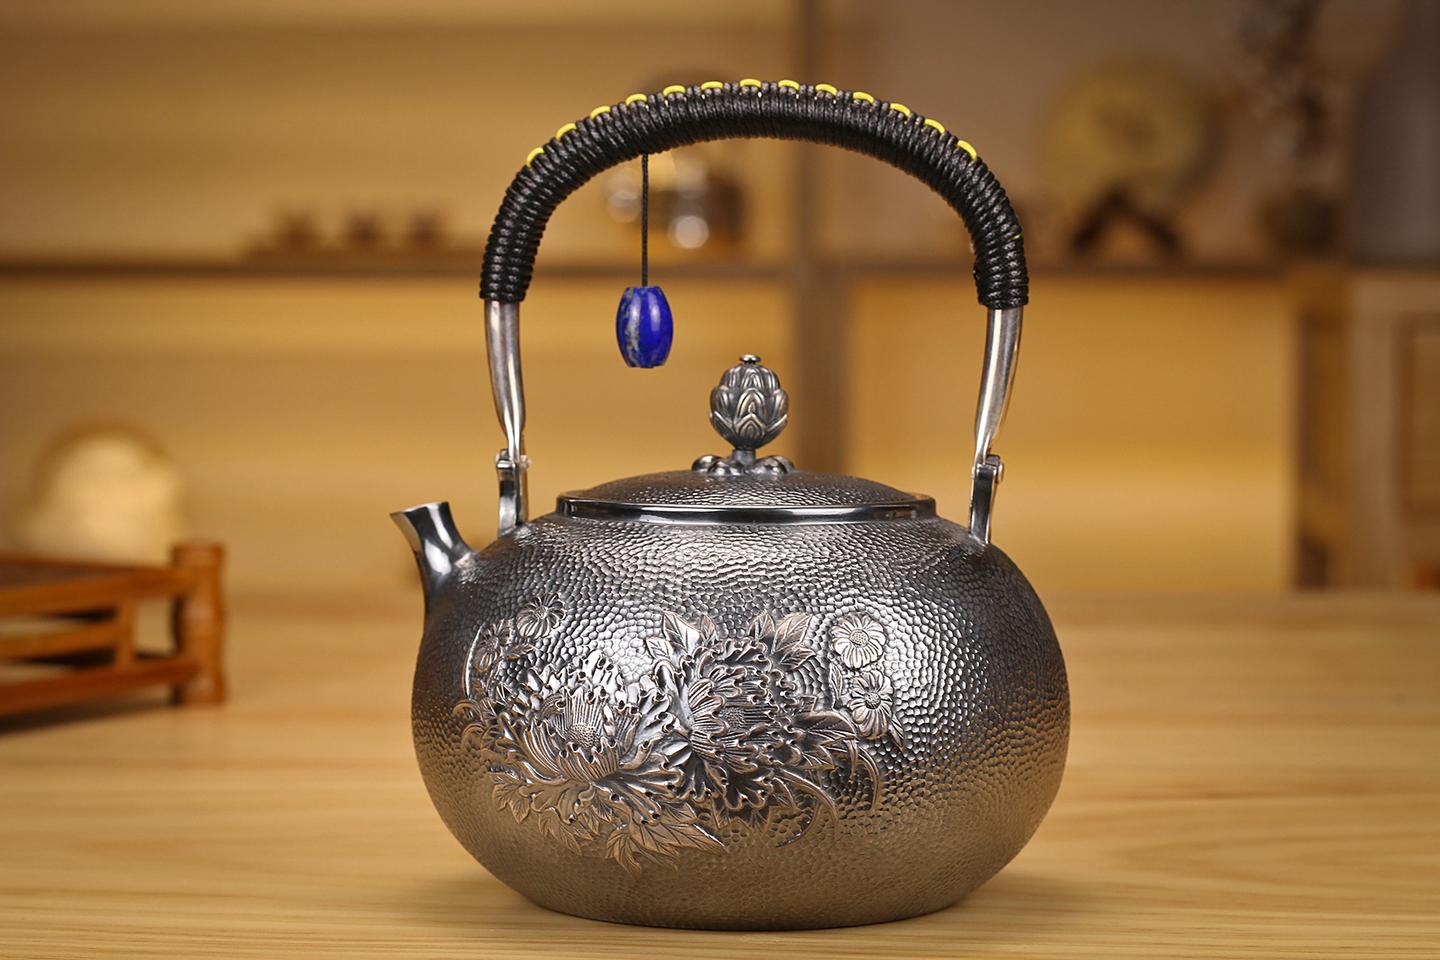 尚壶坊:银壶做旧的工艺